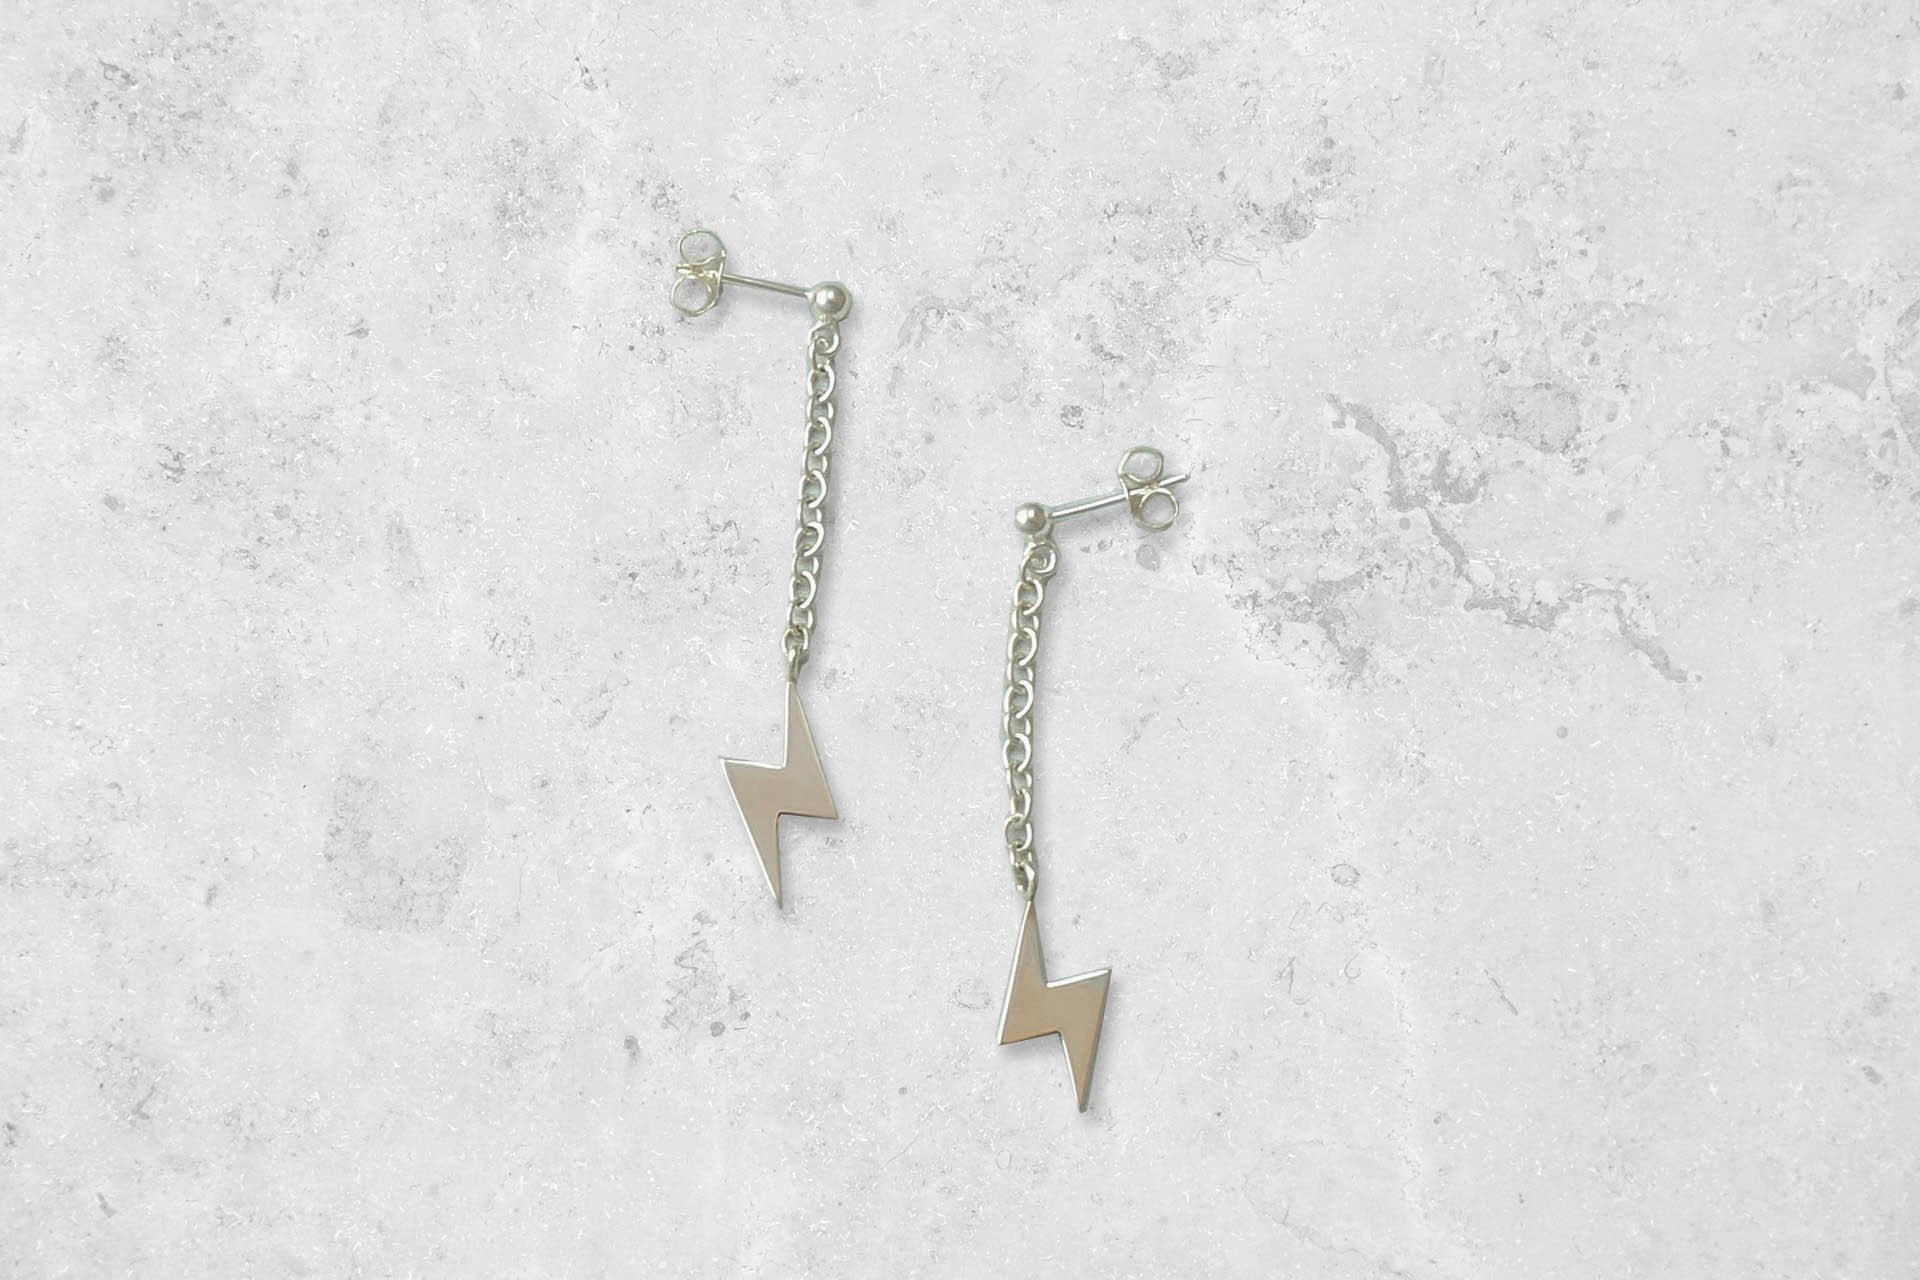 Lightning bolt dangle drop Earrings. Handmade in England. Park Road Jewellery, Bespoke Handmade Sterling Silver Jewellery